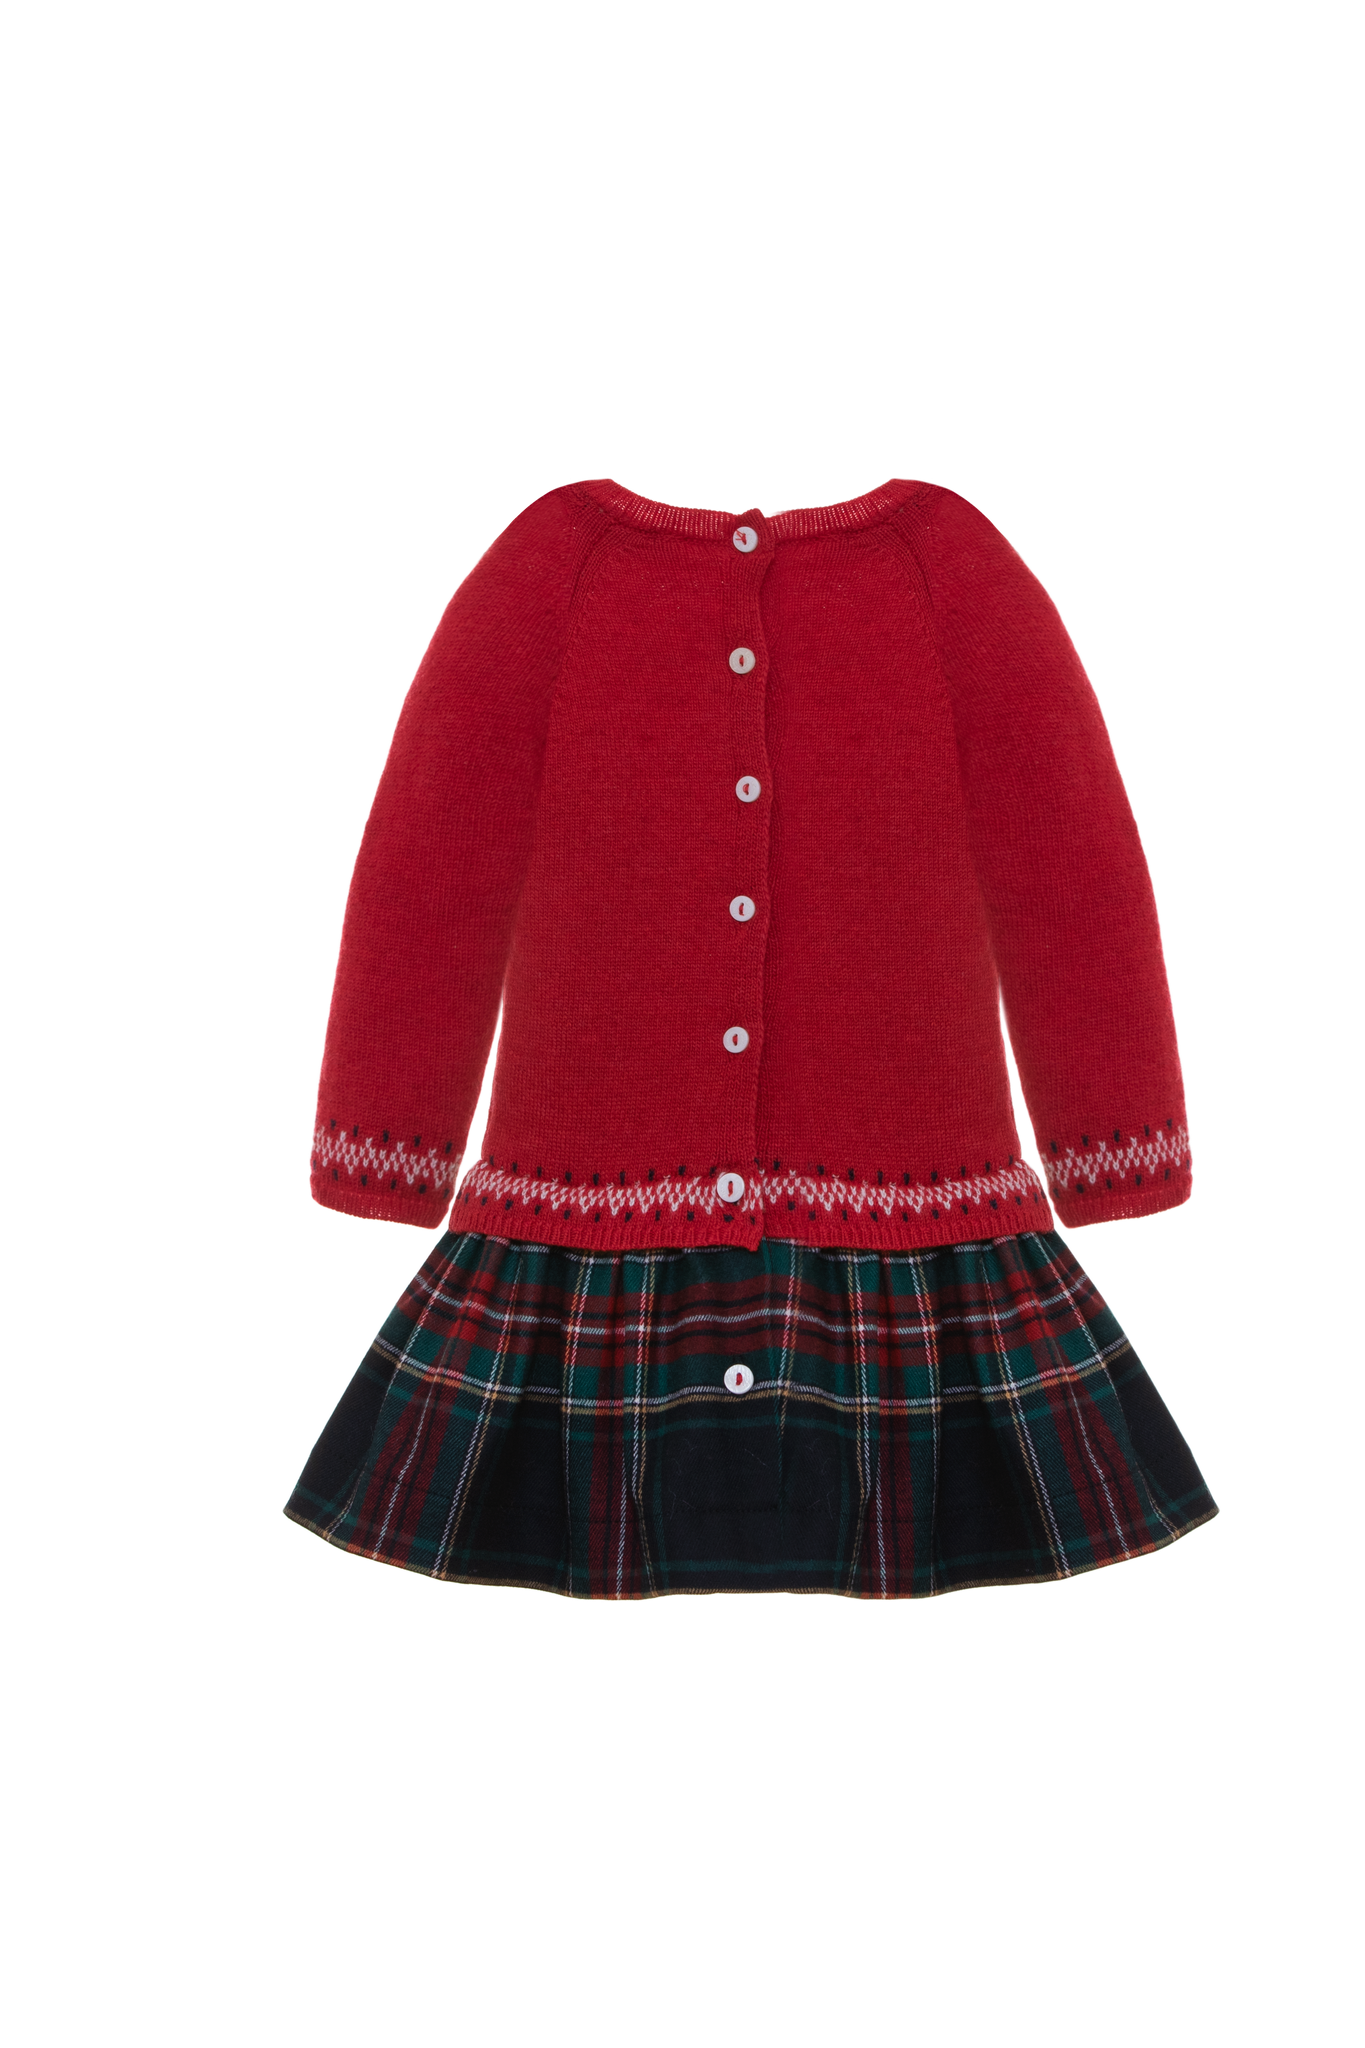 AW22 Patachou Red & Green Tartan Half-Knit Reindeer Motif Drop Waist Dress